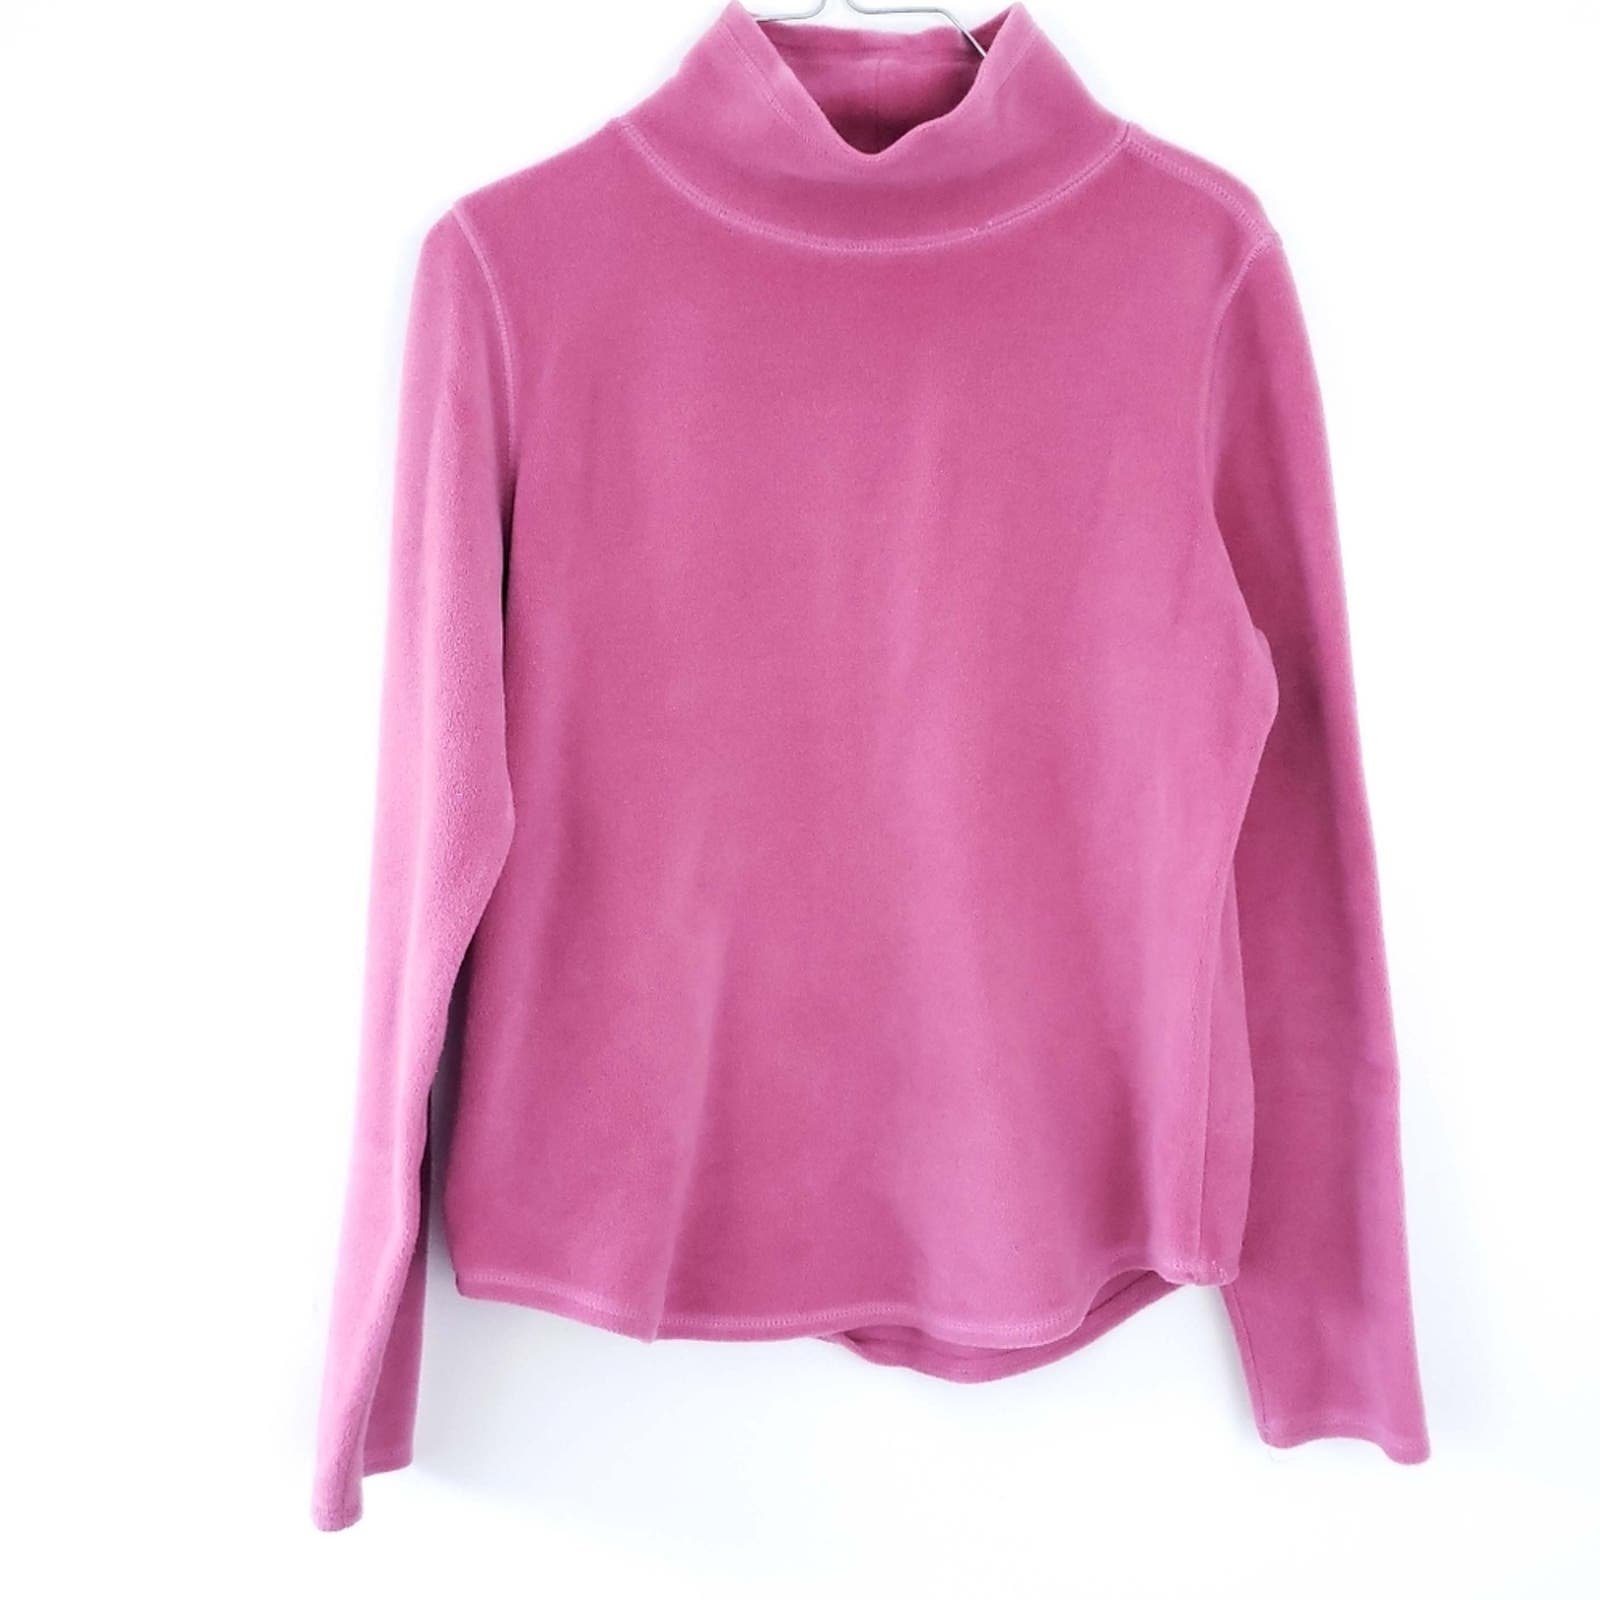 Great Loft Pink High Neck Fleece Stretch Long Sleeve Small Winter Long Sleeve Top HLmXkze0l Online Shop